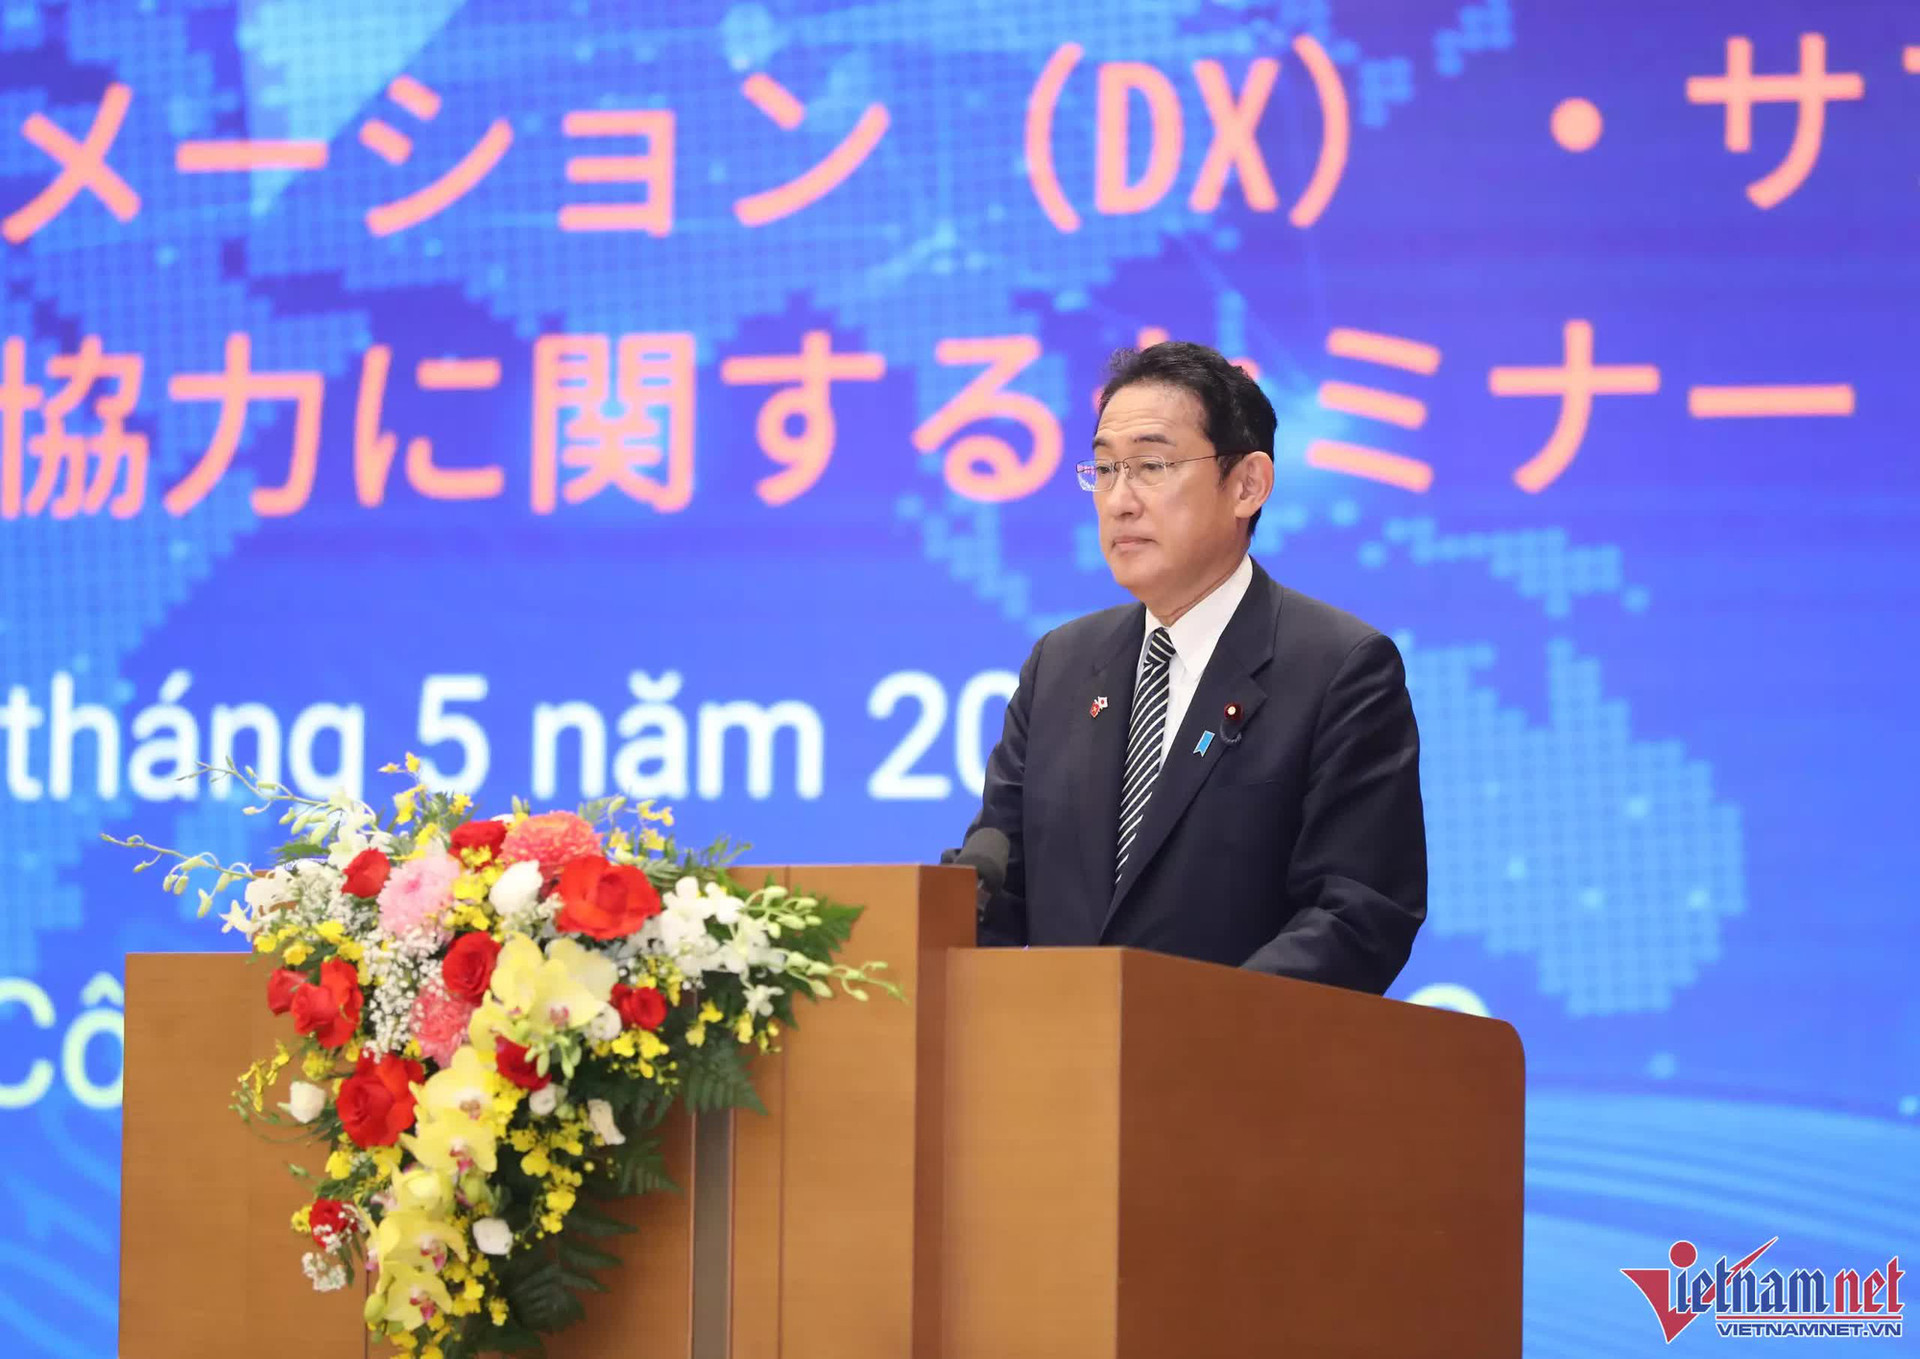 Nhật Bản - Việt Nam kỳ vọng giải quyết các vấn đề kinh tế thông qua chuyển đổi số - Ảnh 4.